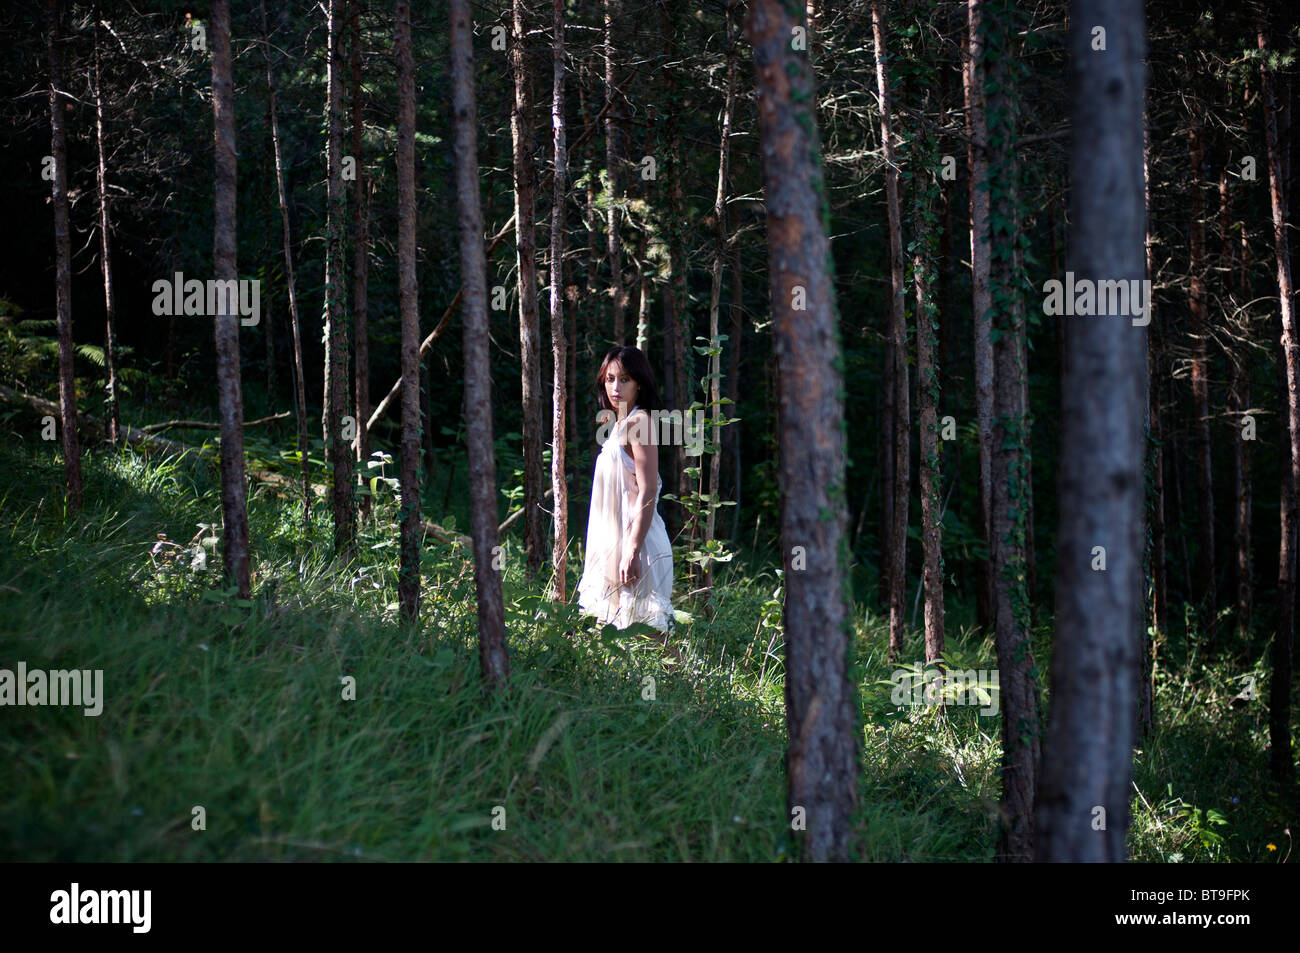 Une jeune femme dans une forêt de pins, vêtue d'une robe blanche Banque D'Images